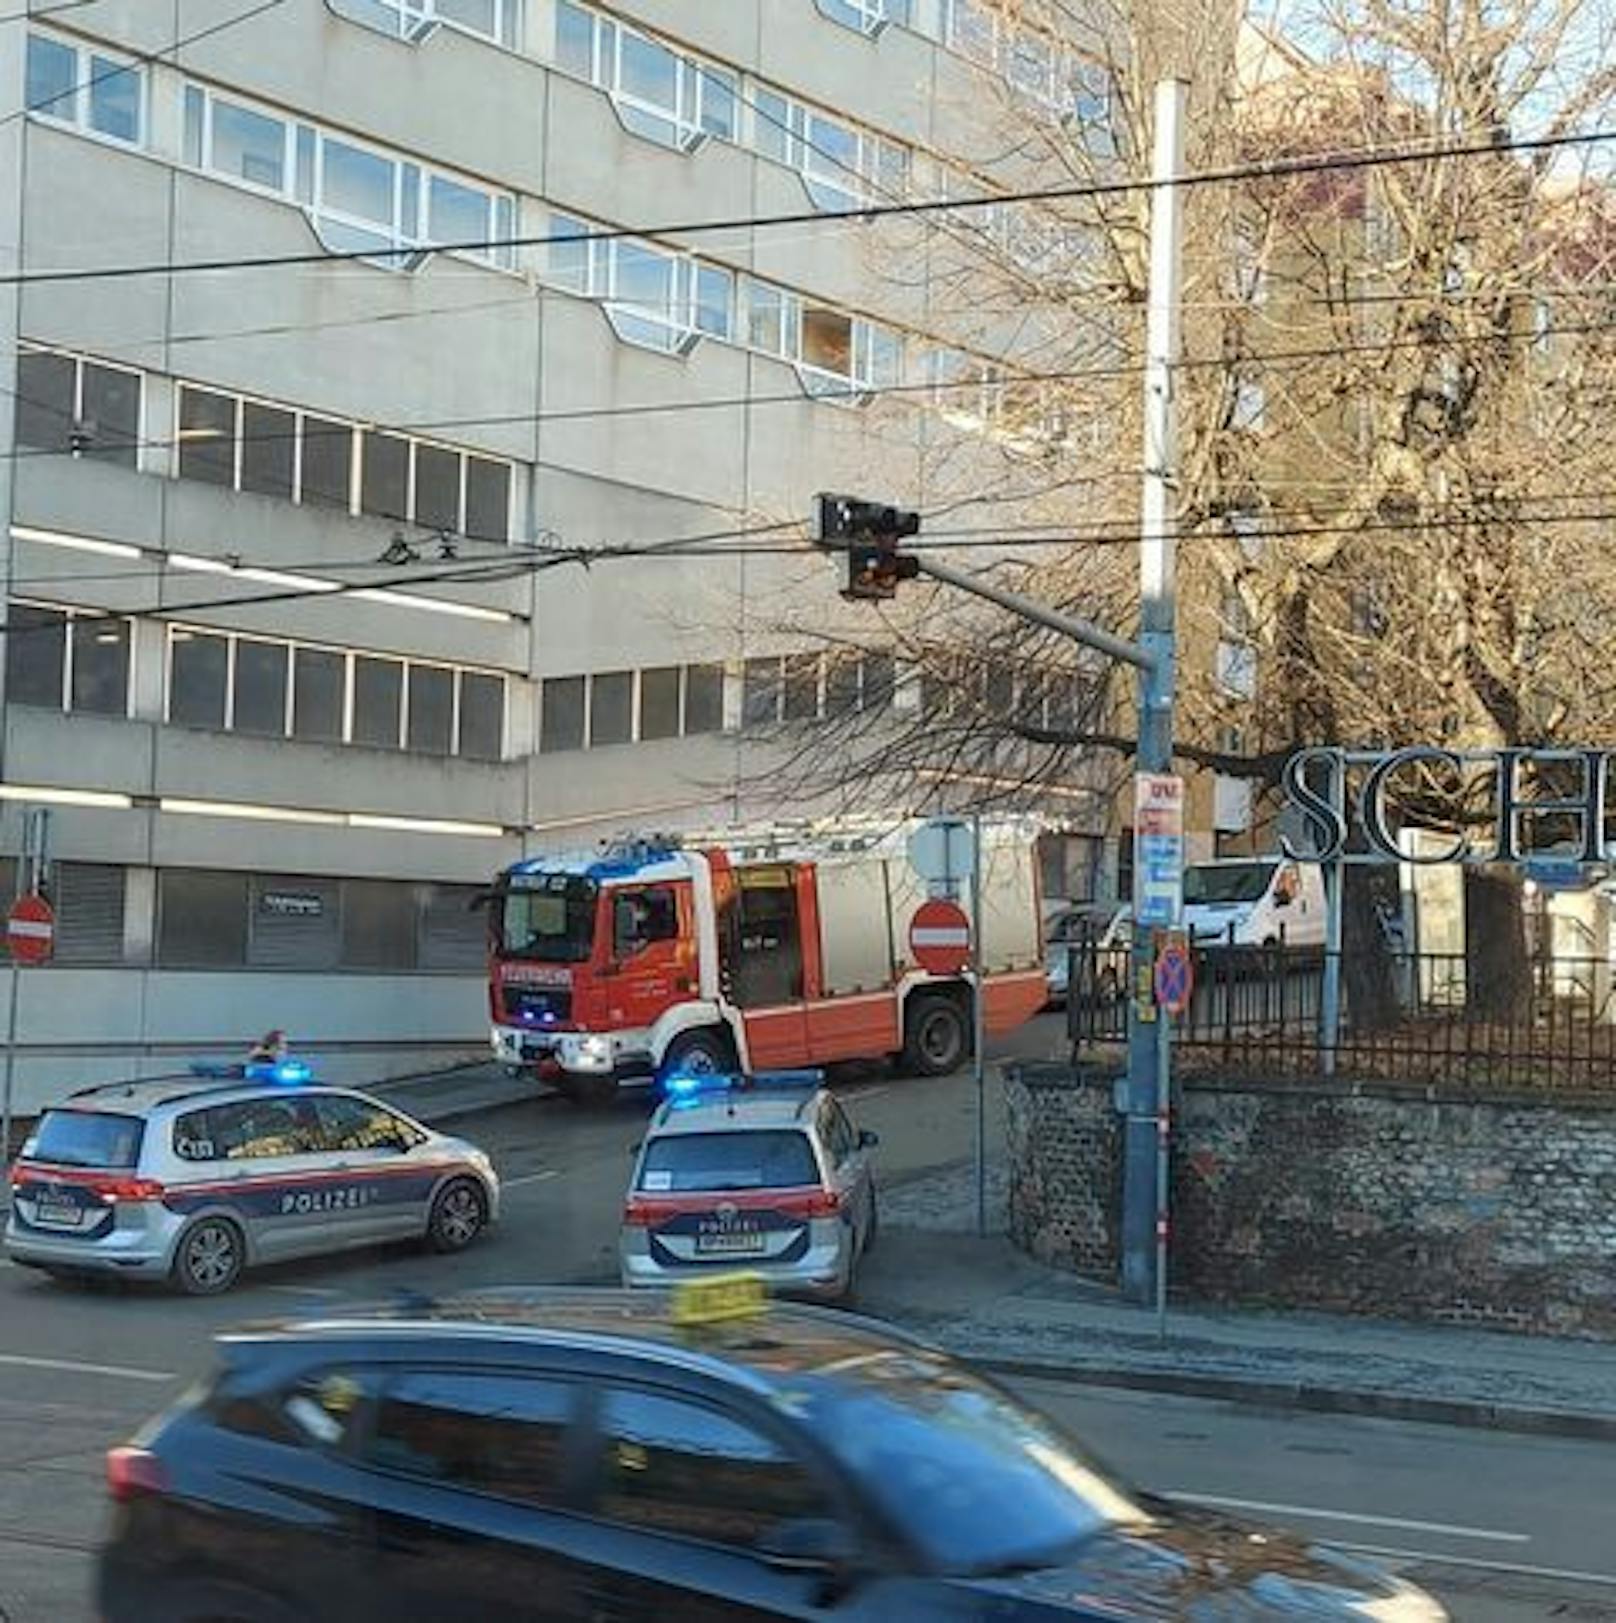 Feuerwehr-Einsatz auf der Heiligenstädter Straße (Wien-Döbling)